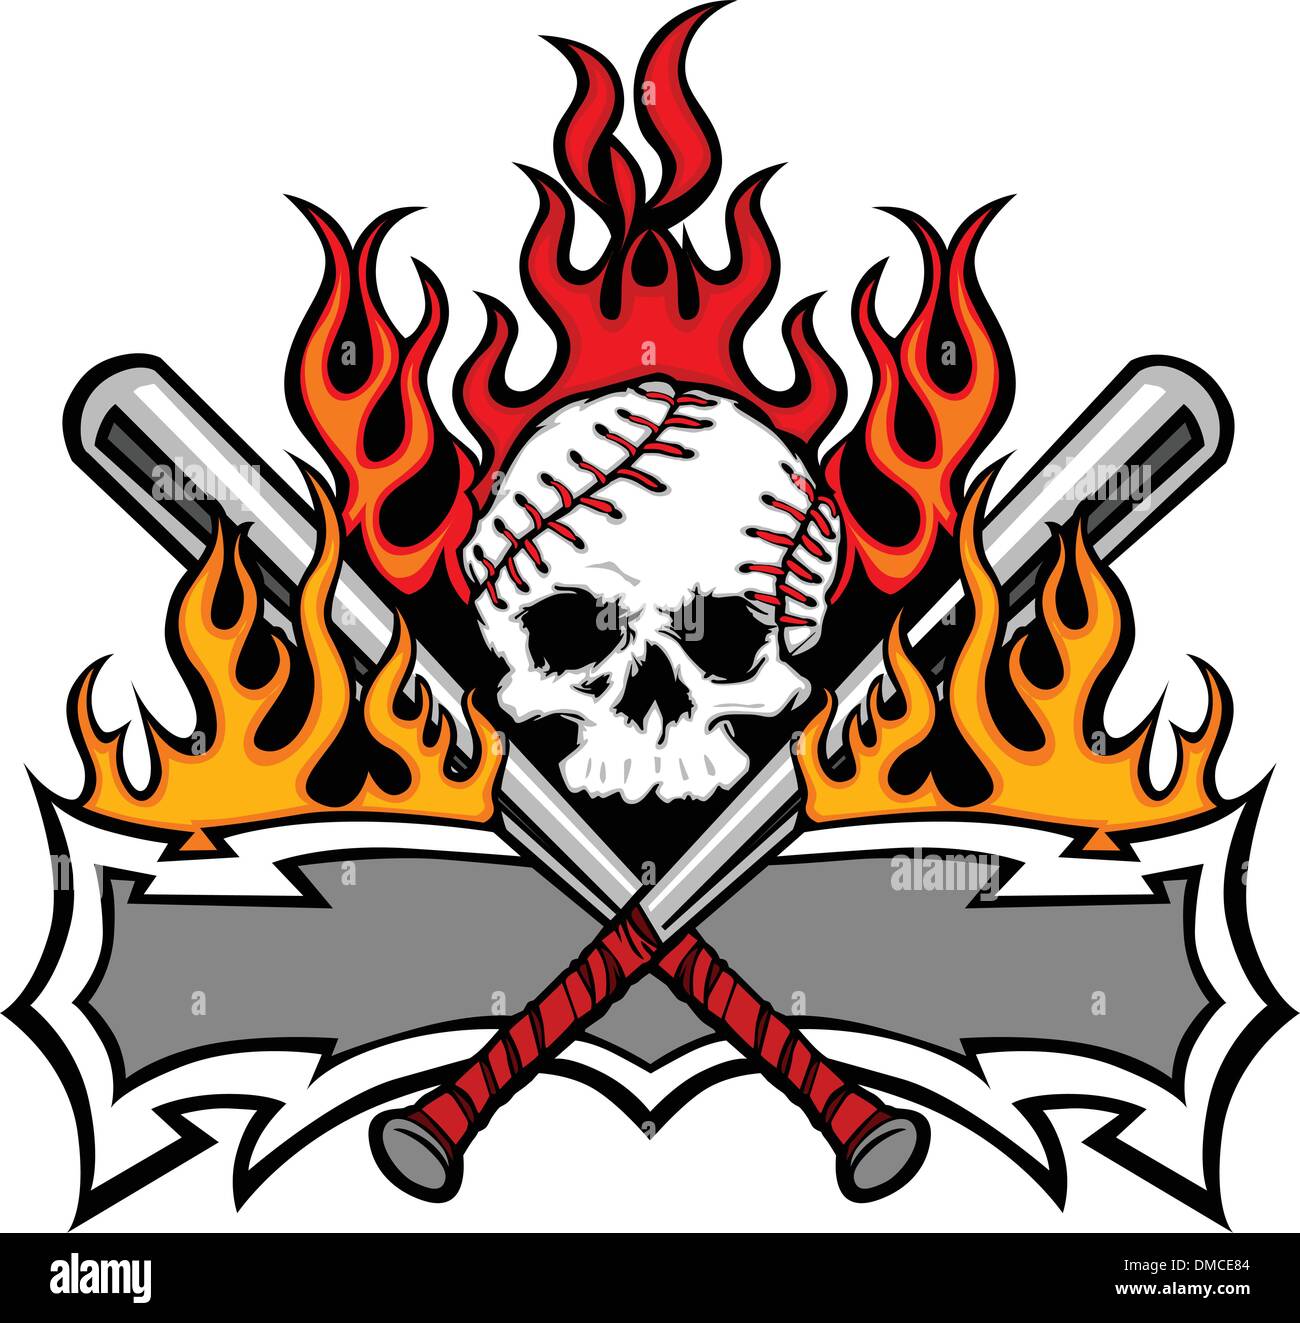 Softball Baseball Skull and Bats Flaming Template Image Stock Vector